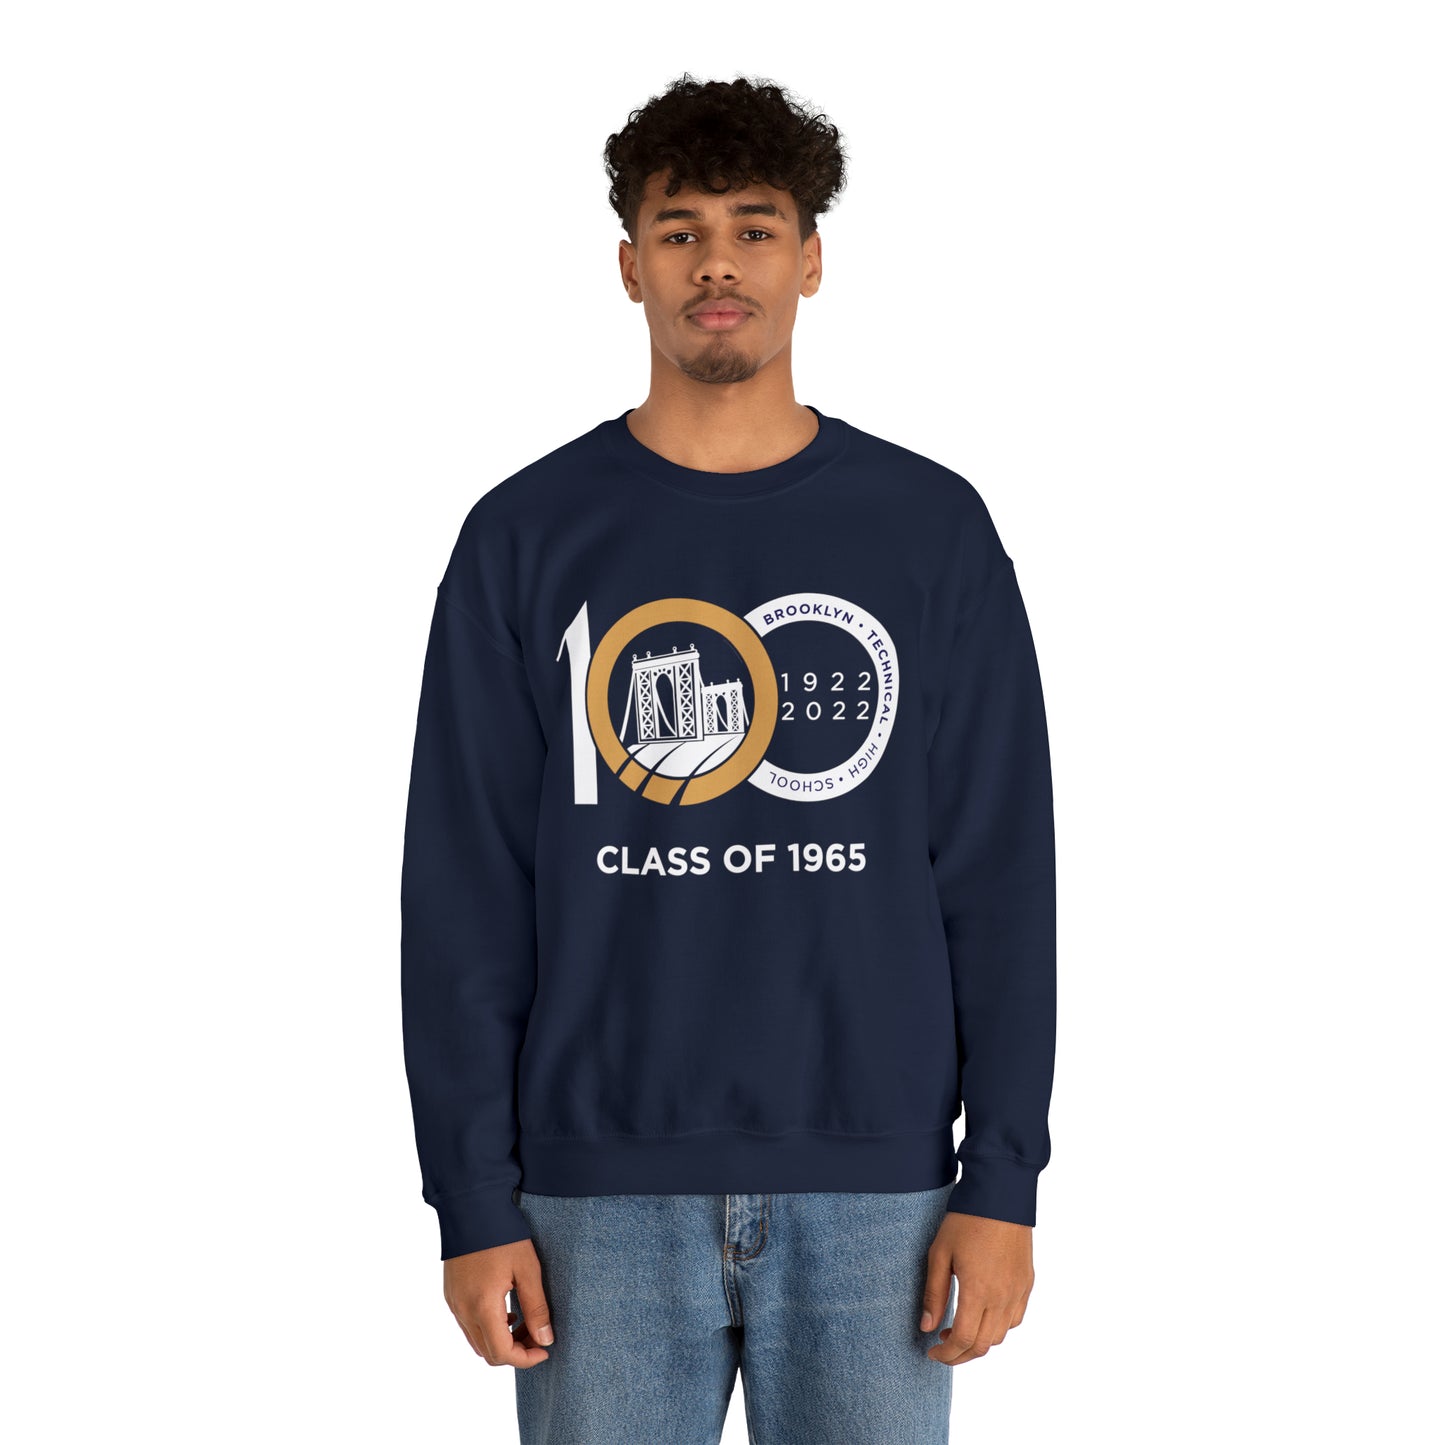 Centennial - Men's Heavy Blend Crewneck Sweatshirt - Class Of 1965